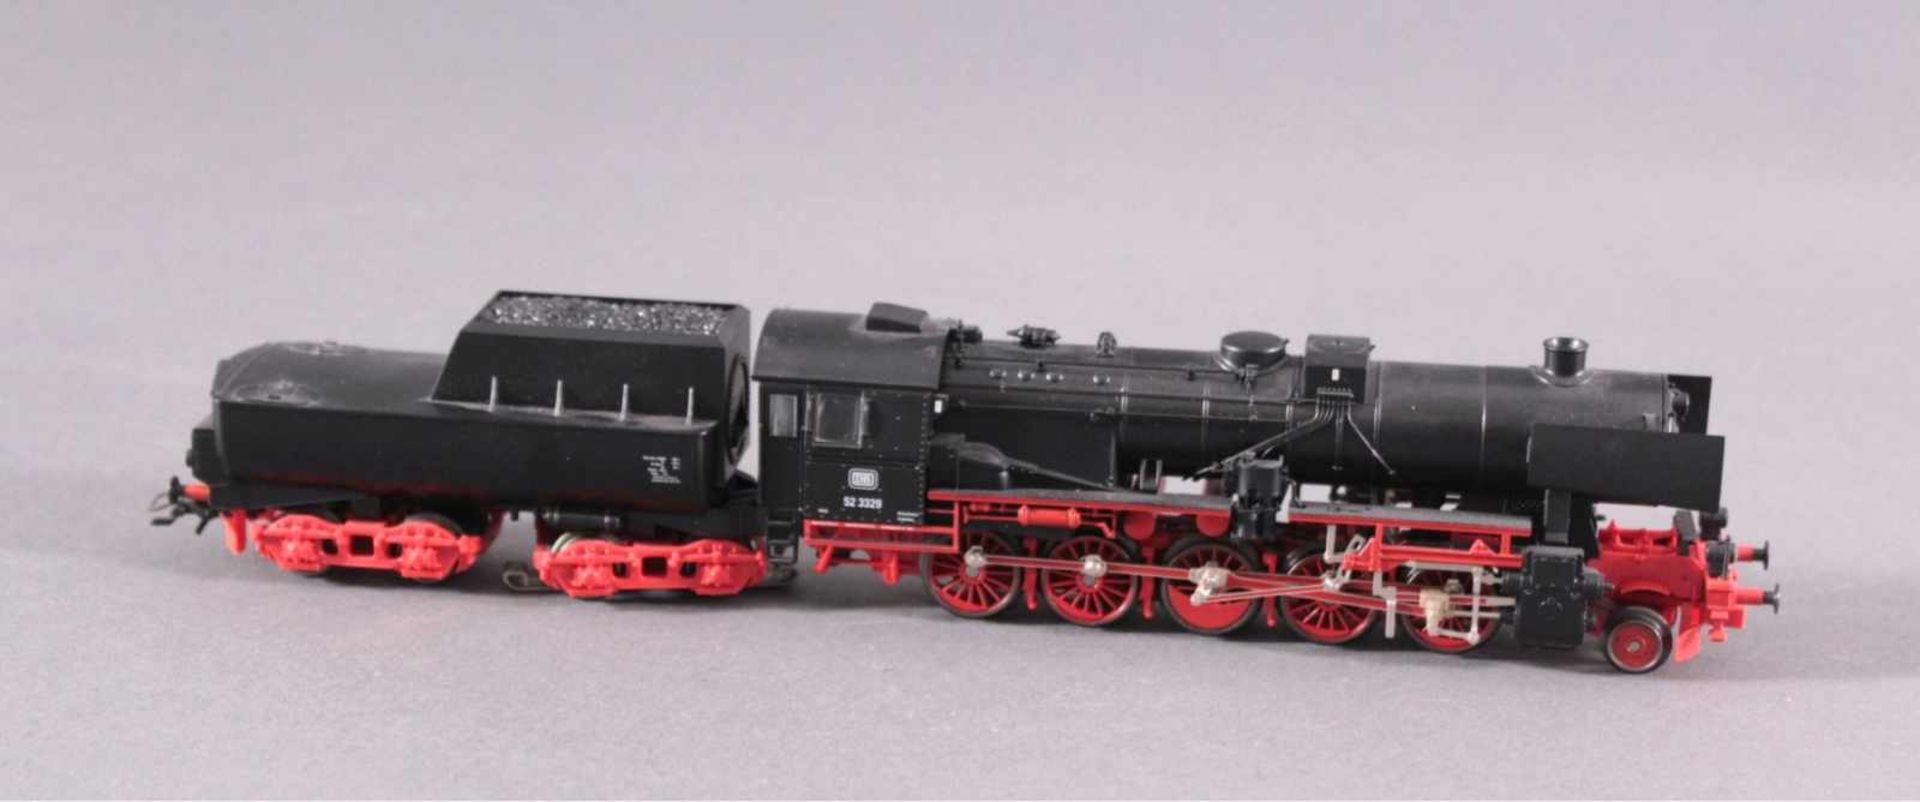 Märklin Lokomotive 3329 mit 4 Waggons - Bild 2 aus 2